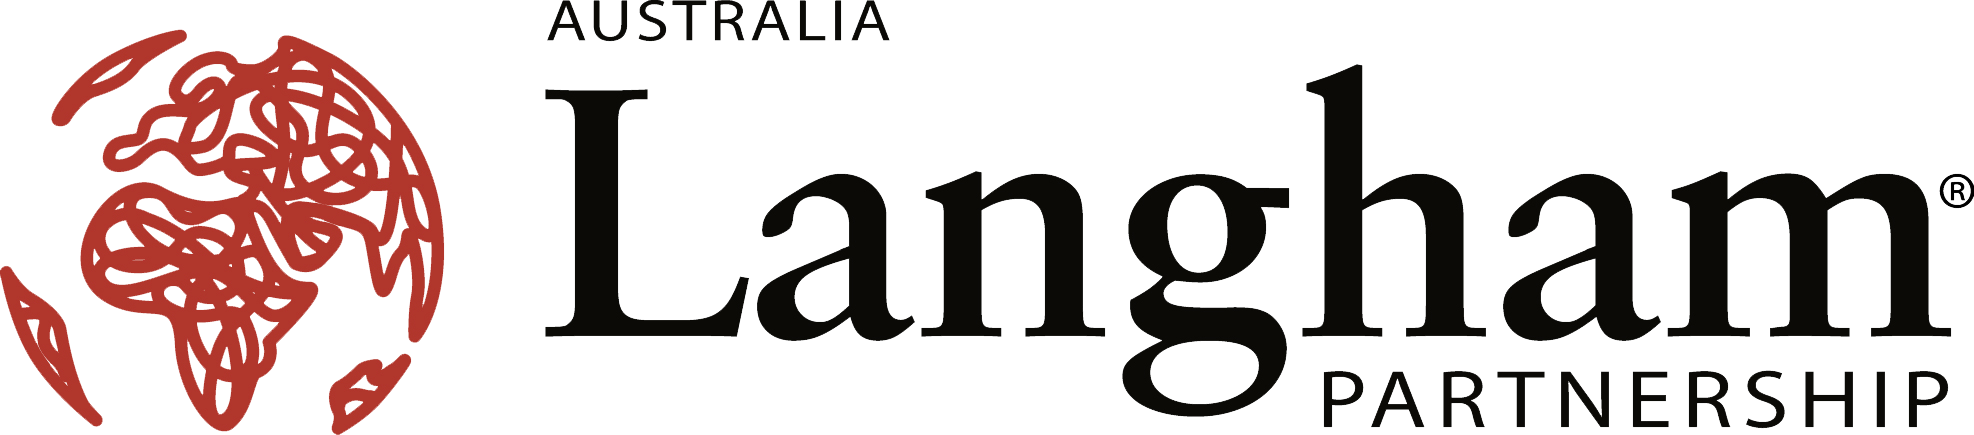 Langham Partnership Australia logo